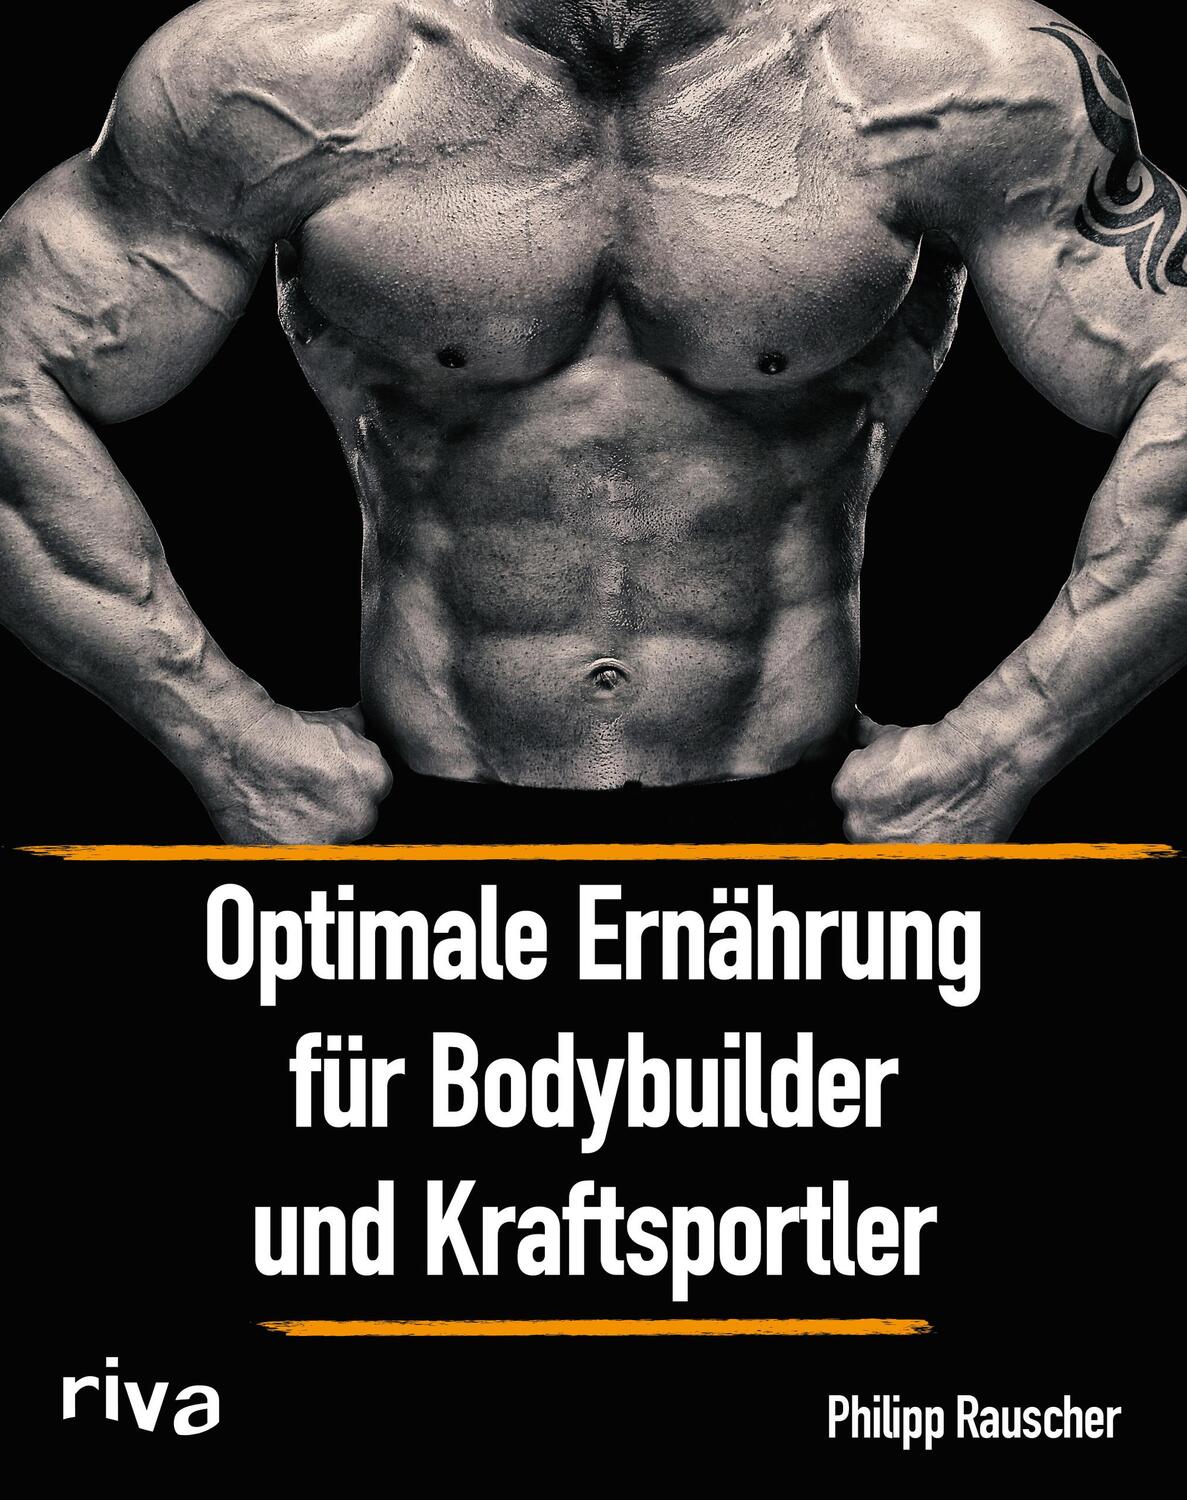 Optimale Ernährung für Bodybuilder und Kraftsportler - Rauscher, Philipp